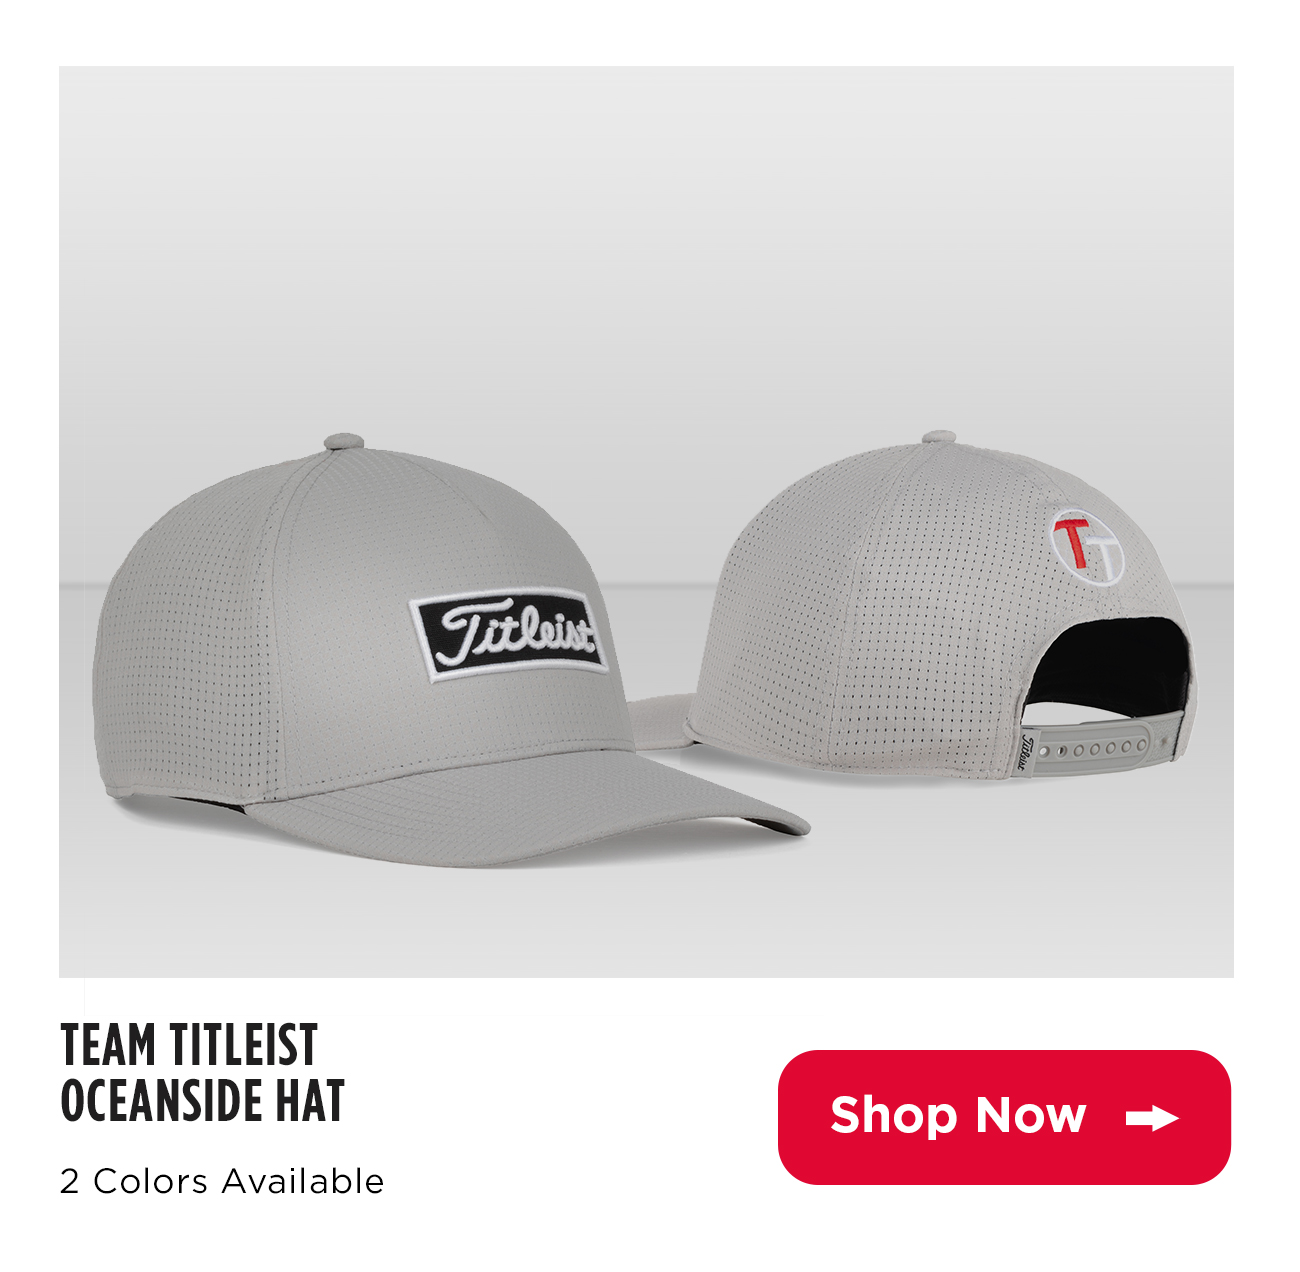 Shop Team Titleist Oceanside Hats